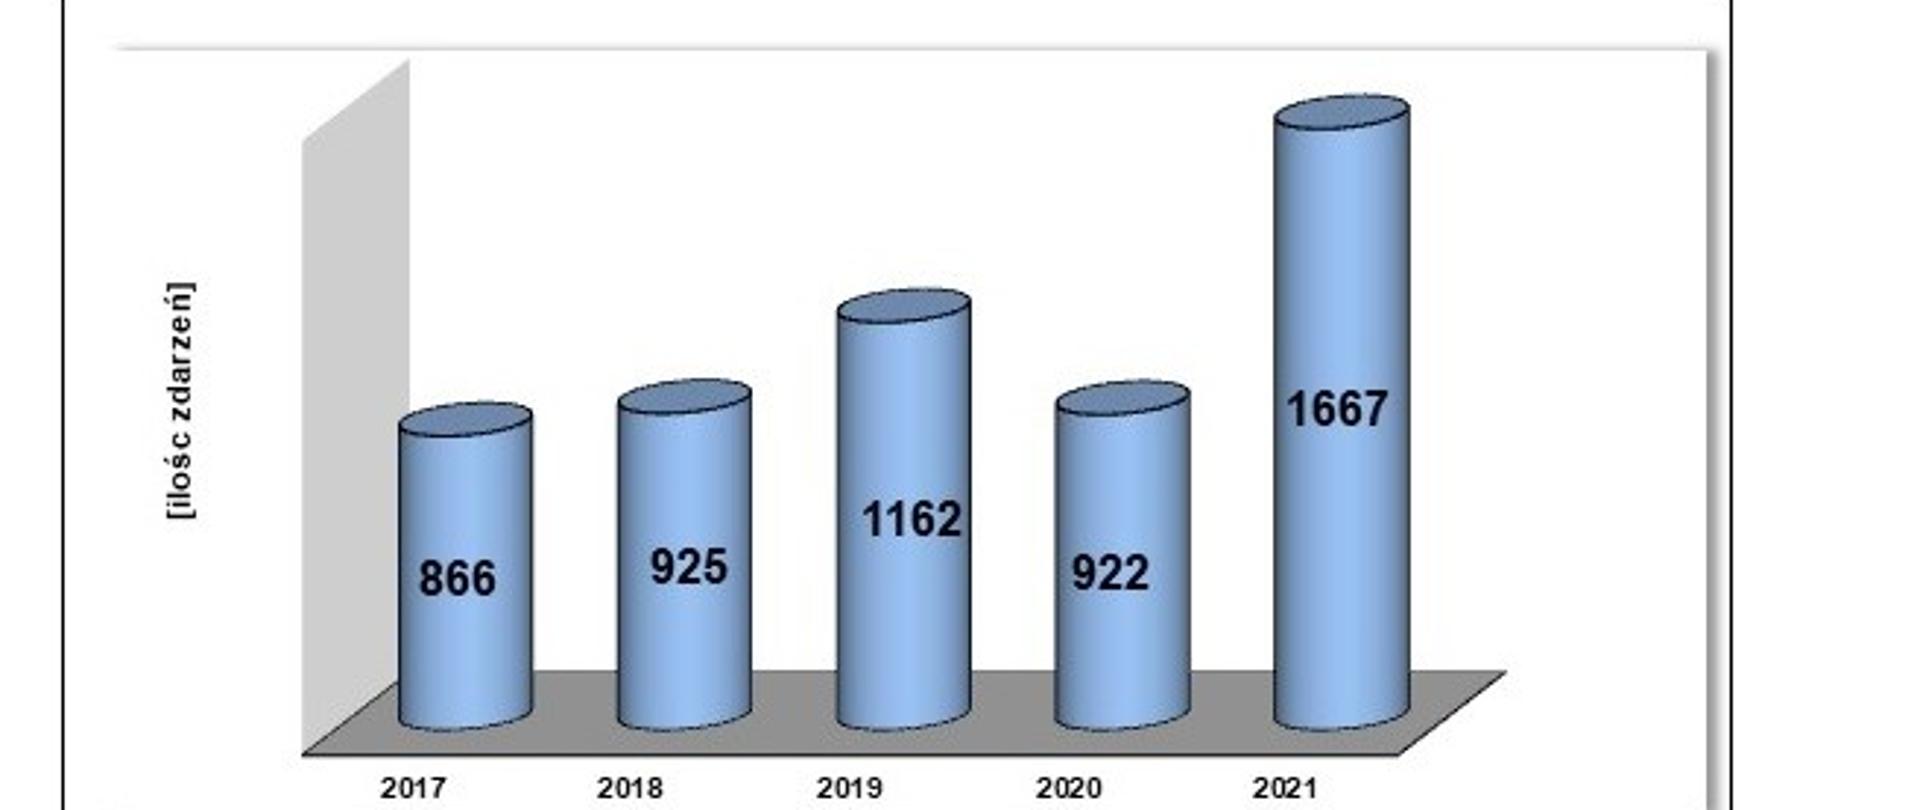 Porównanie ilości zdarzeń w latach 2017 - 2021